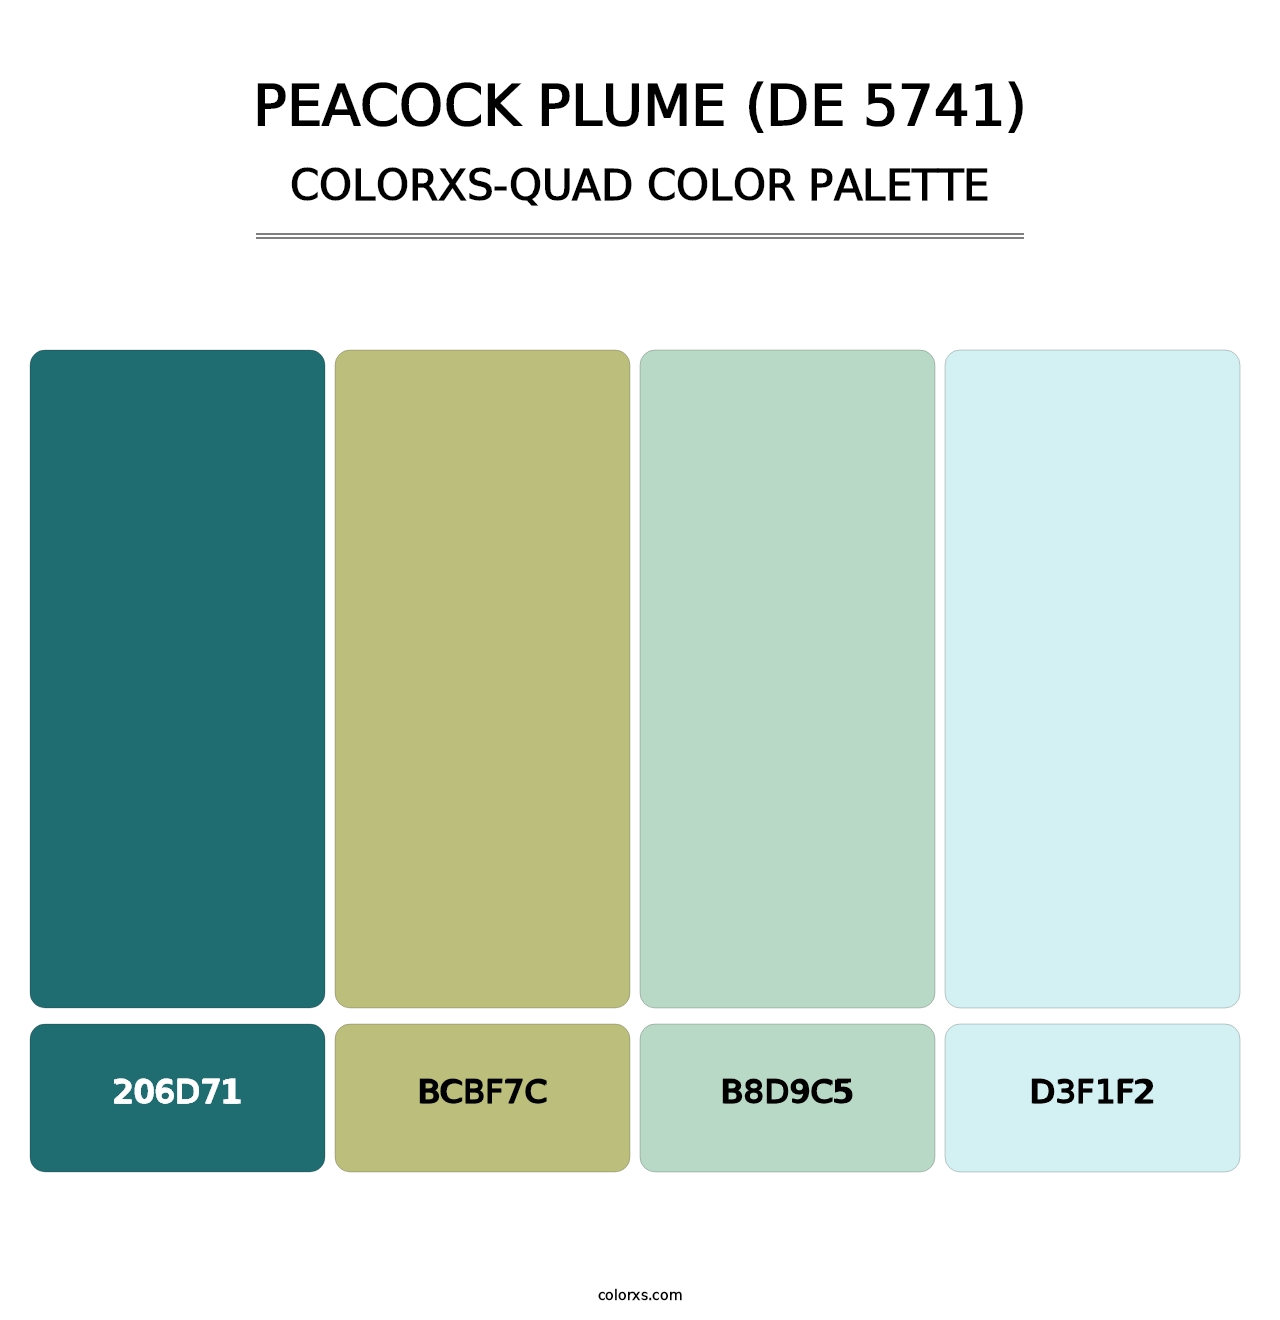 Peacock Plume (DE 5741) - Colorxs Quad Palette